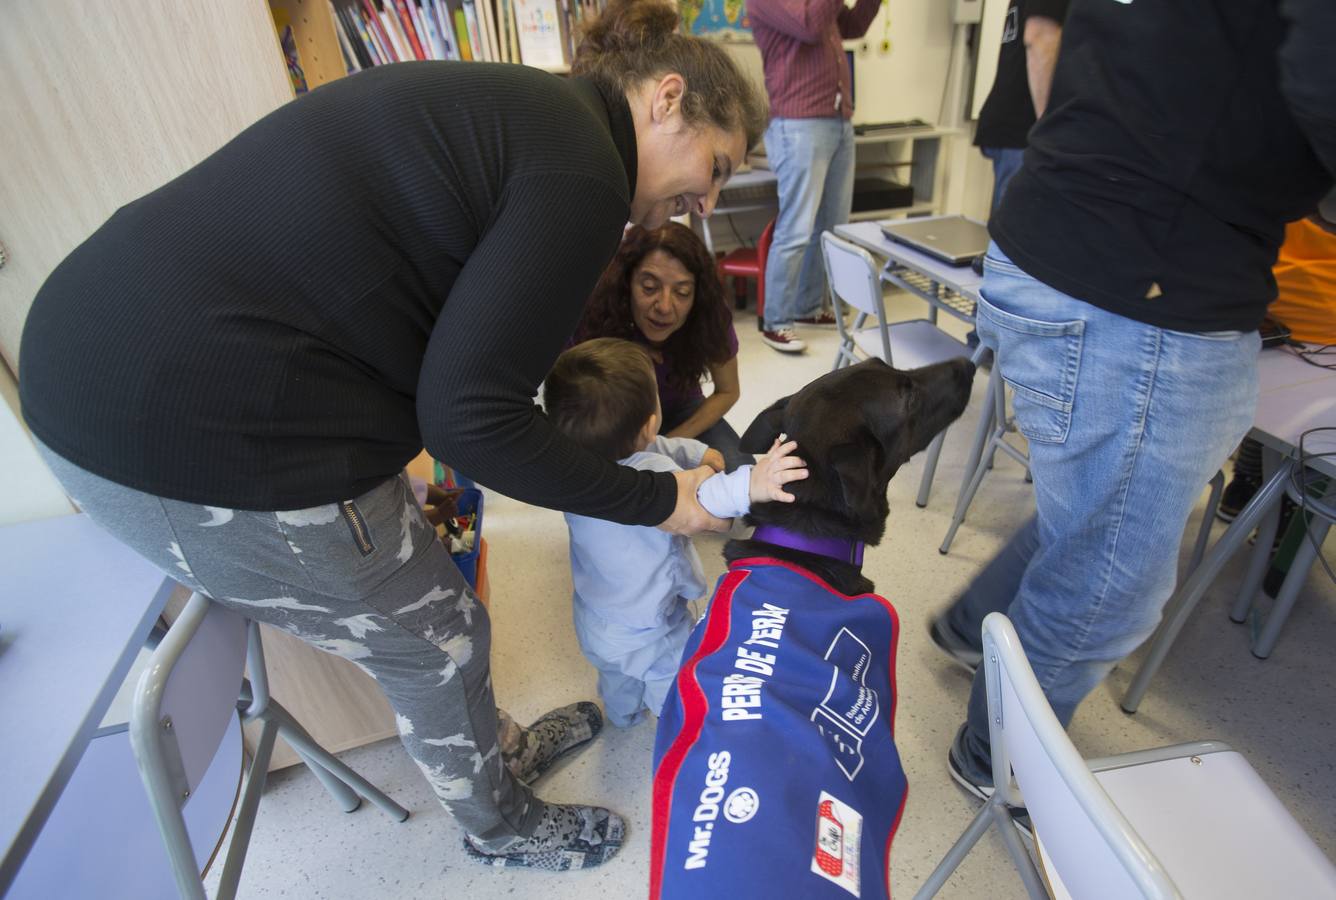 Siete canes forman parte del equipo del 'Doctor Guau', un proyecto puesto en marcha por la Consejería de Salud con el objetivo de contribuir a la recuperación de los niños hospitalizados a través de la mejora física, social, emocional y cognitiva mediante terapias con perros